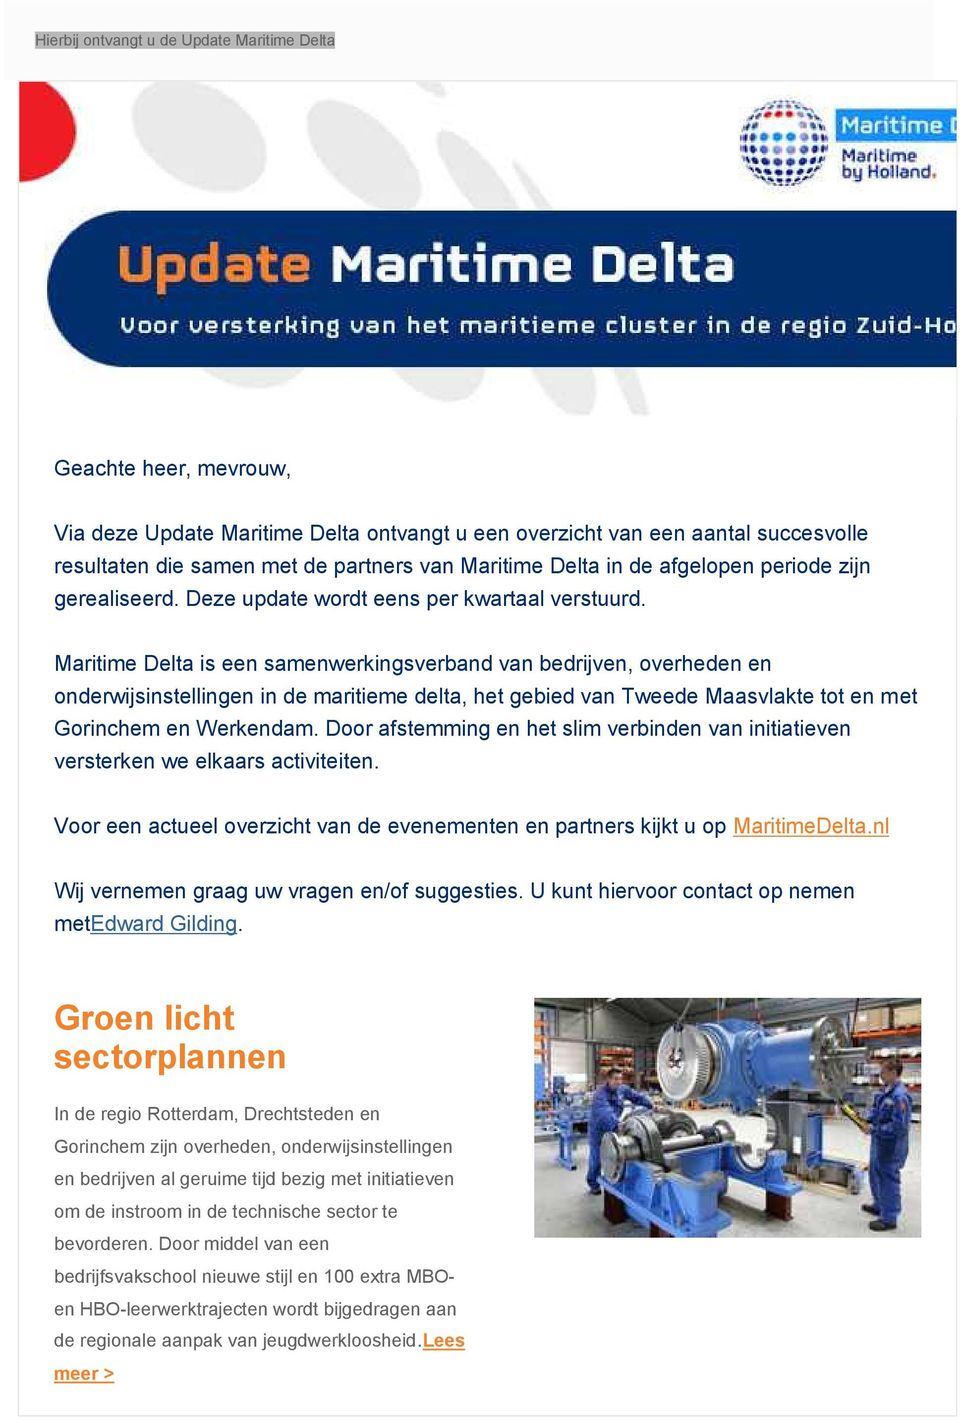 Maritime Delta is een samenwerkingsverband van bedrijven, overheden en onderwijsinstellingen in de maritieme delta, het gebied van Tweede Maasvlakte tot en met Gorinchem en Werkendam.